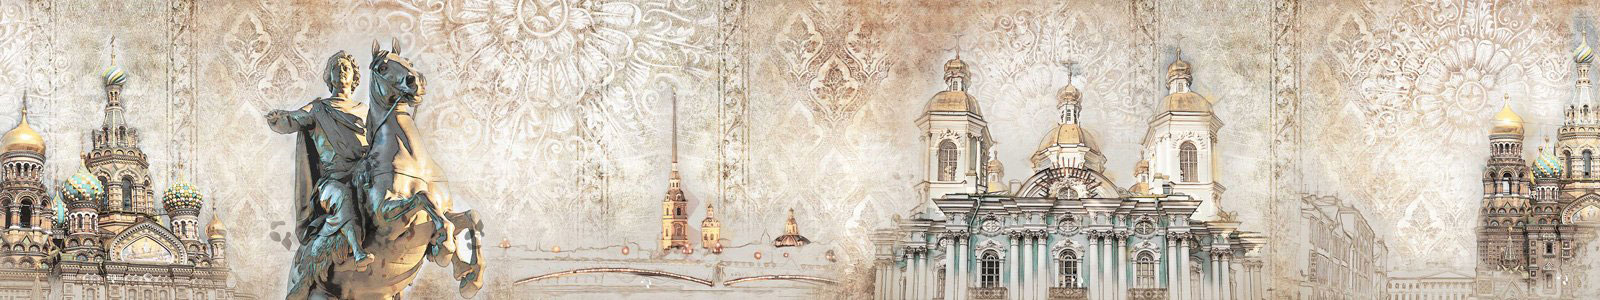 №6483 - Коллаж Санкт-Петербурга в пастельных тонах